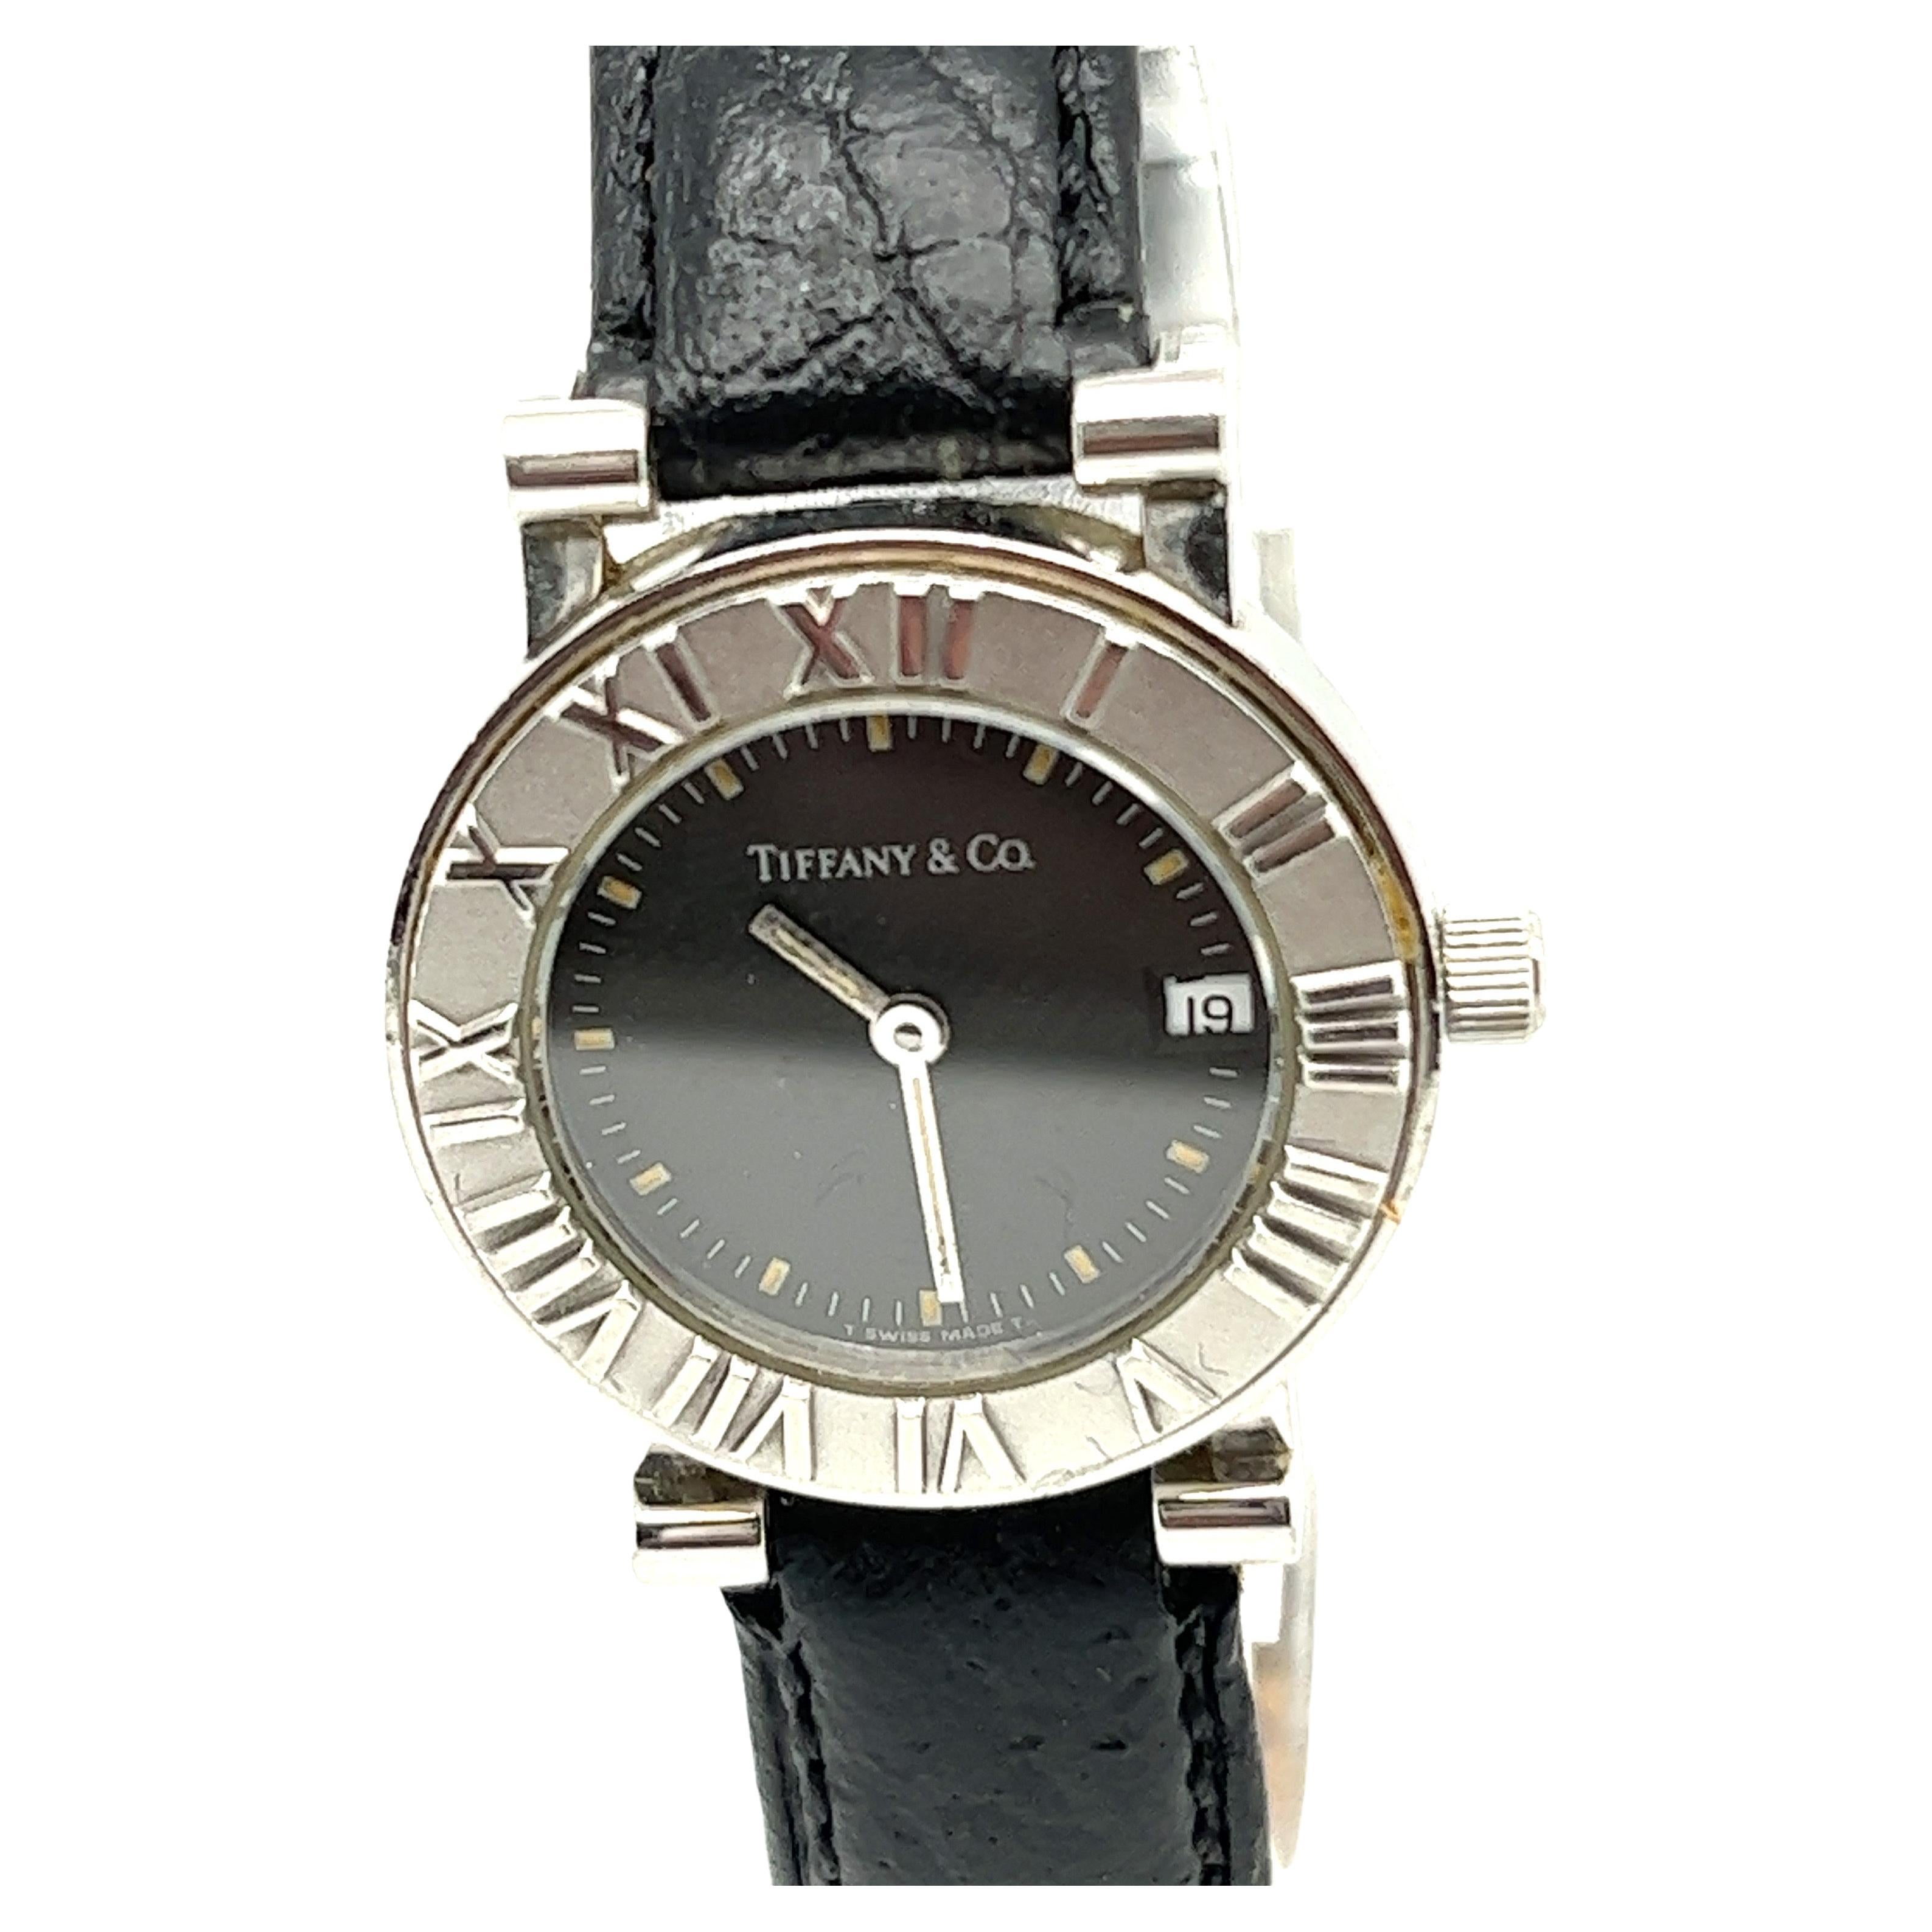 Collectional by Tiffany & Co, cette montre fait partie de la collection Atlas, qui s'inspire de l'horloge qui se trouve devant le magasin phare de New York. Fabriqué en acier inoxydable avec un bracelet en crocodile. Elle est gravée de chiffres